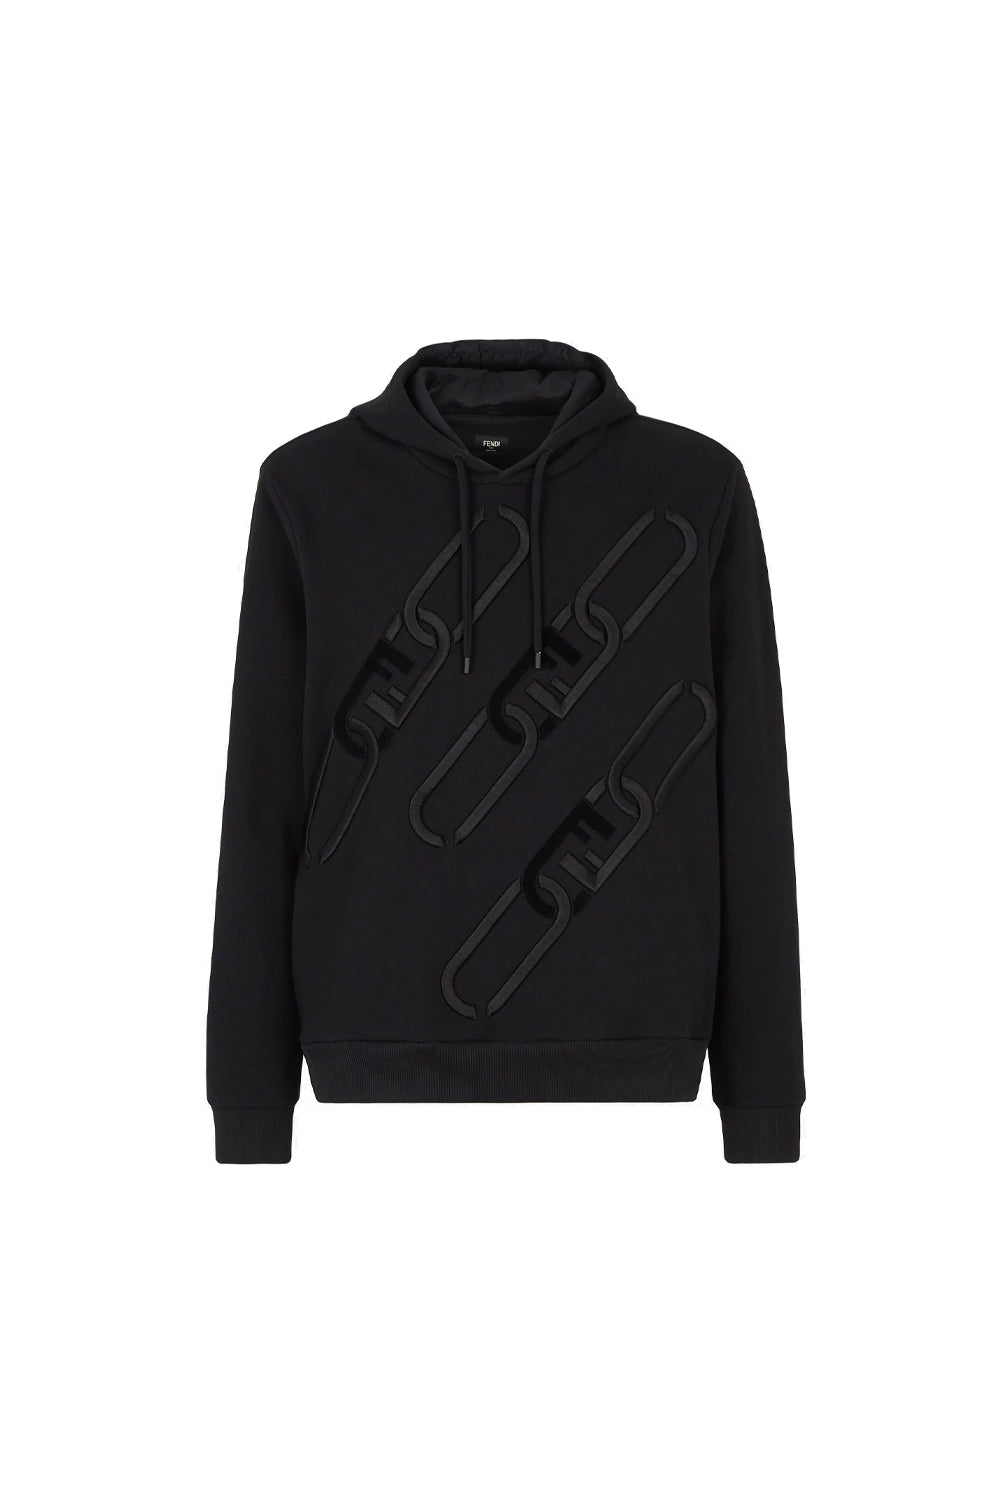 Fendi Black jersey hoodie